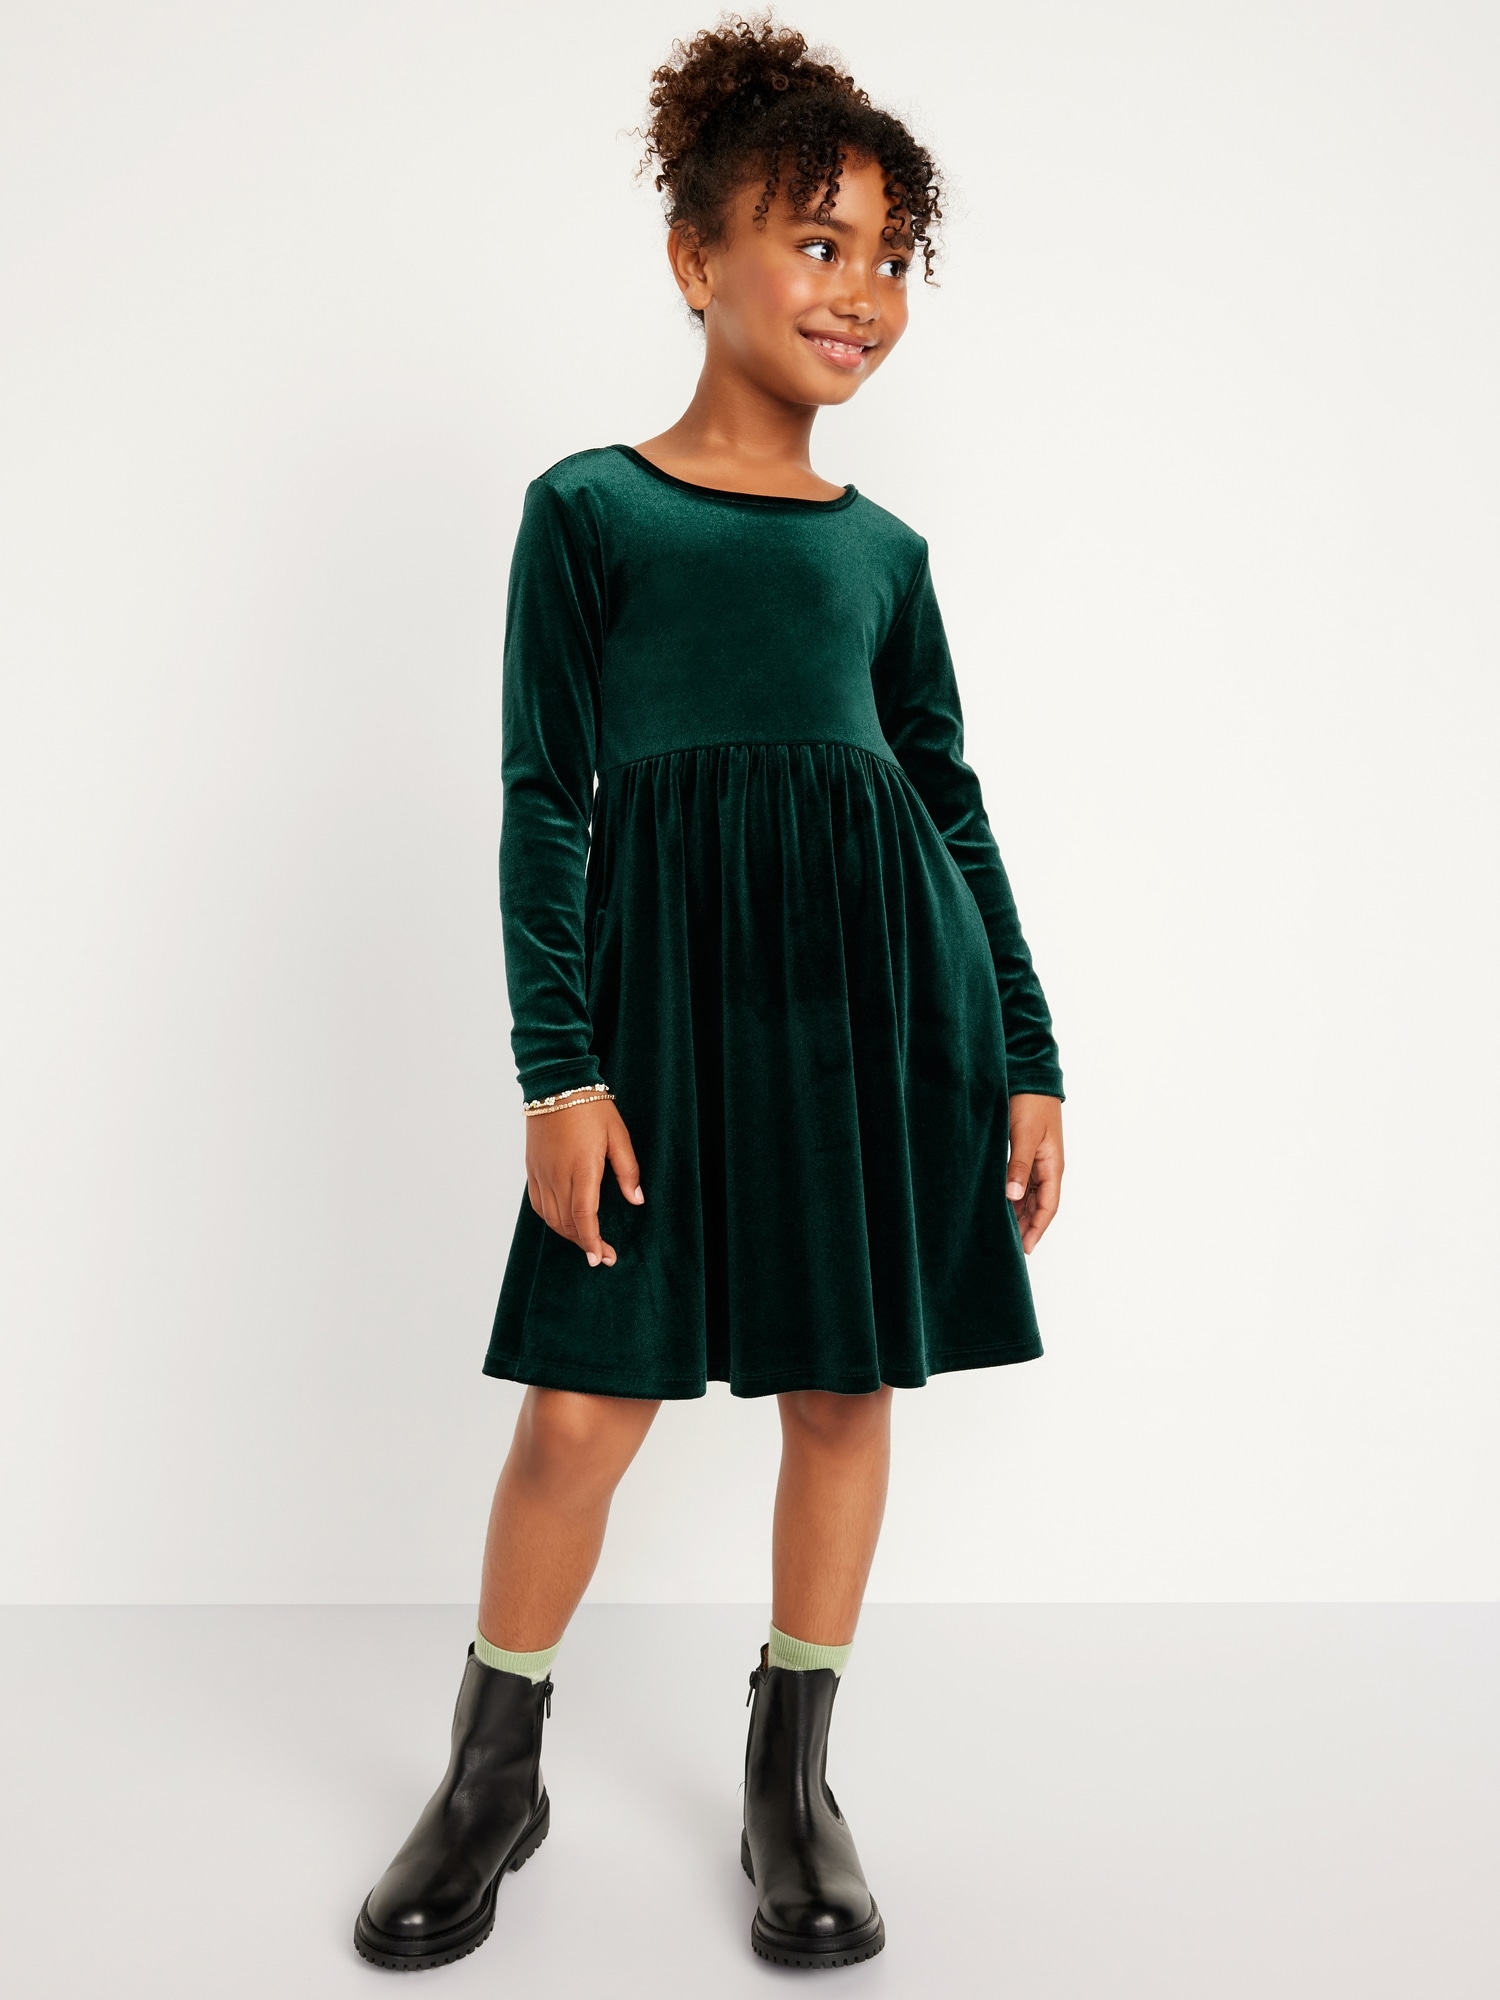 Velvet and Organza | Girls frock design, Baby girl dress design, Girls  velvet dress